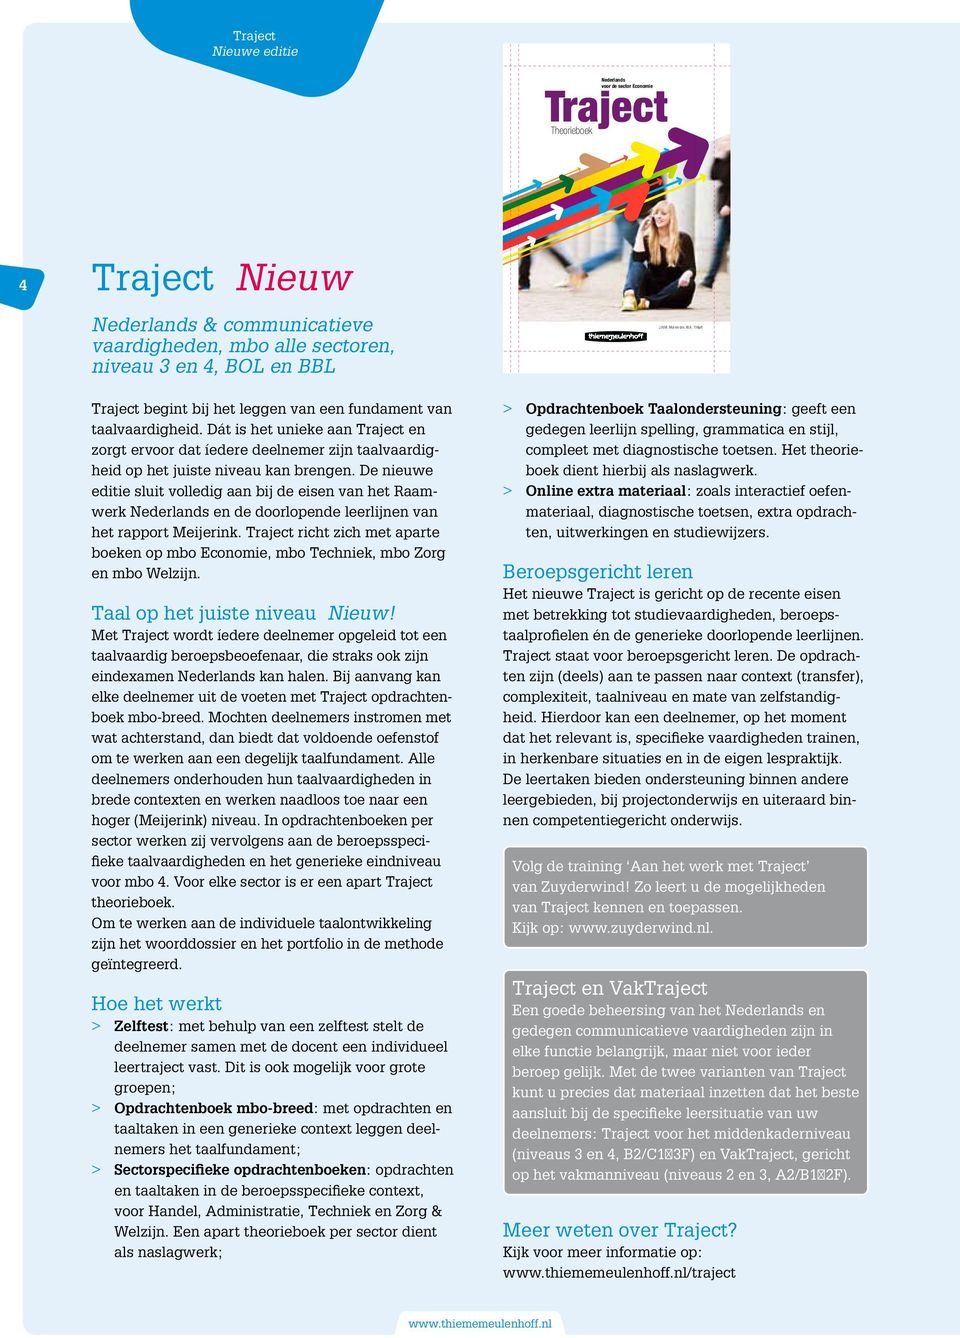 Traject Theorieboek Traject Nederlands voor de sector Economie Theorieboek Traject Theorieboek is handig als naslagwerk in andere leerstofgebieden zodra communicatie een rol speelt.